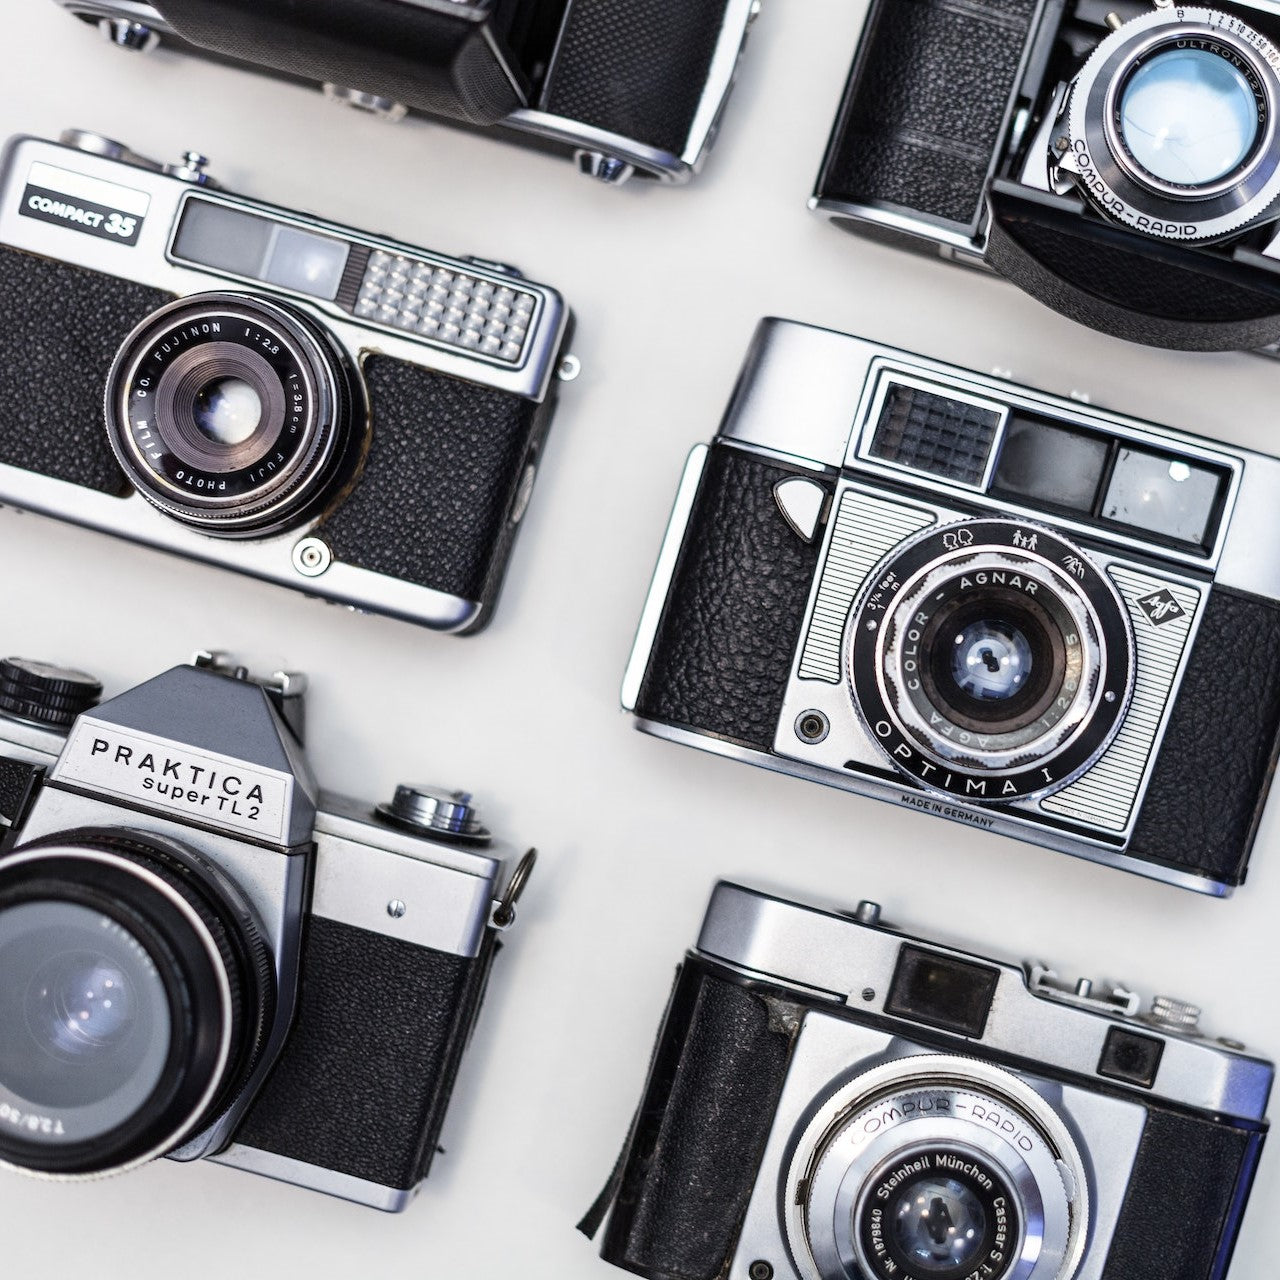 Fotoapparate liegen in einem Fotofachgeschäft aus